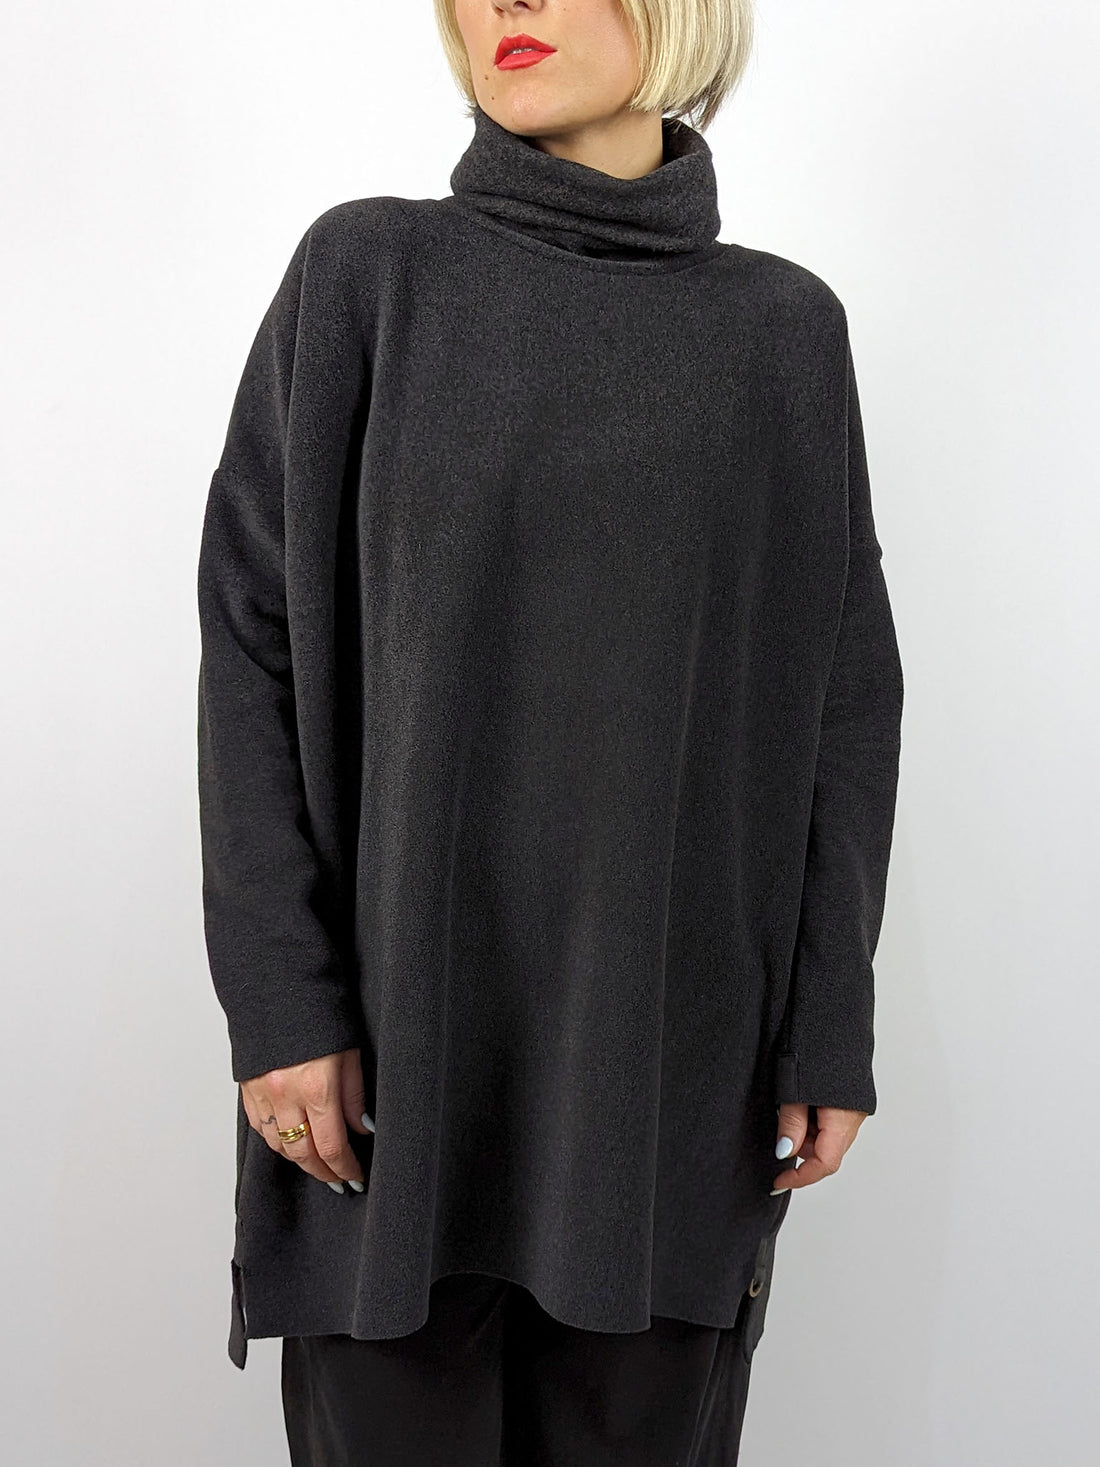 Henriette Steffensen 1288 High Neck Fleece Tunic in SOFT BLACK